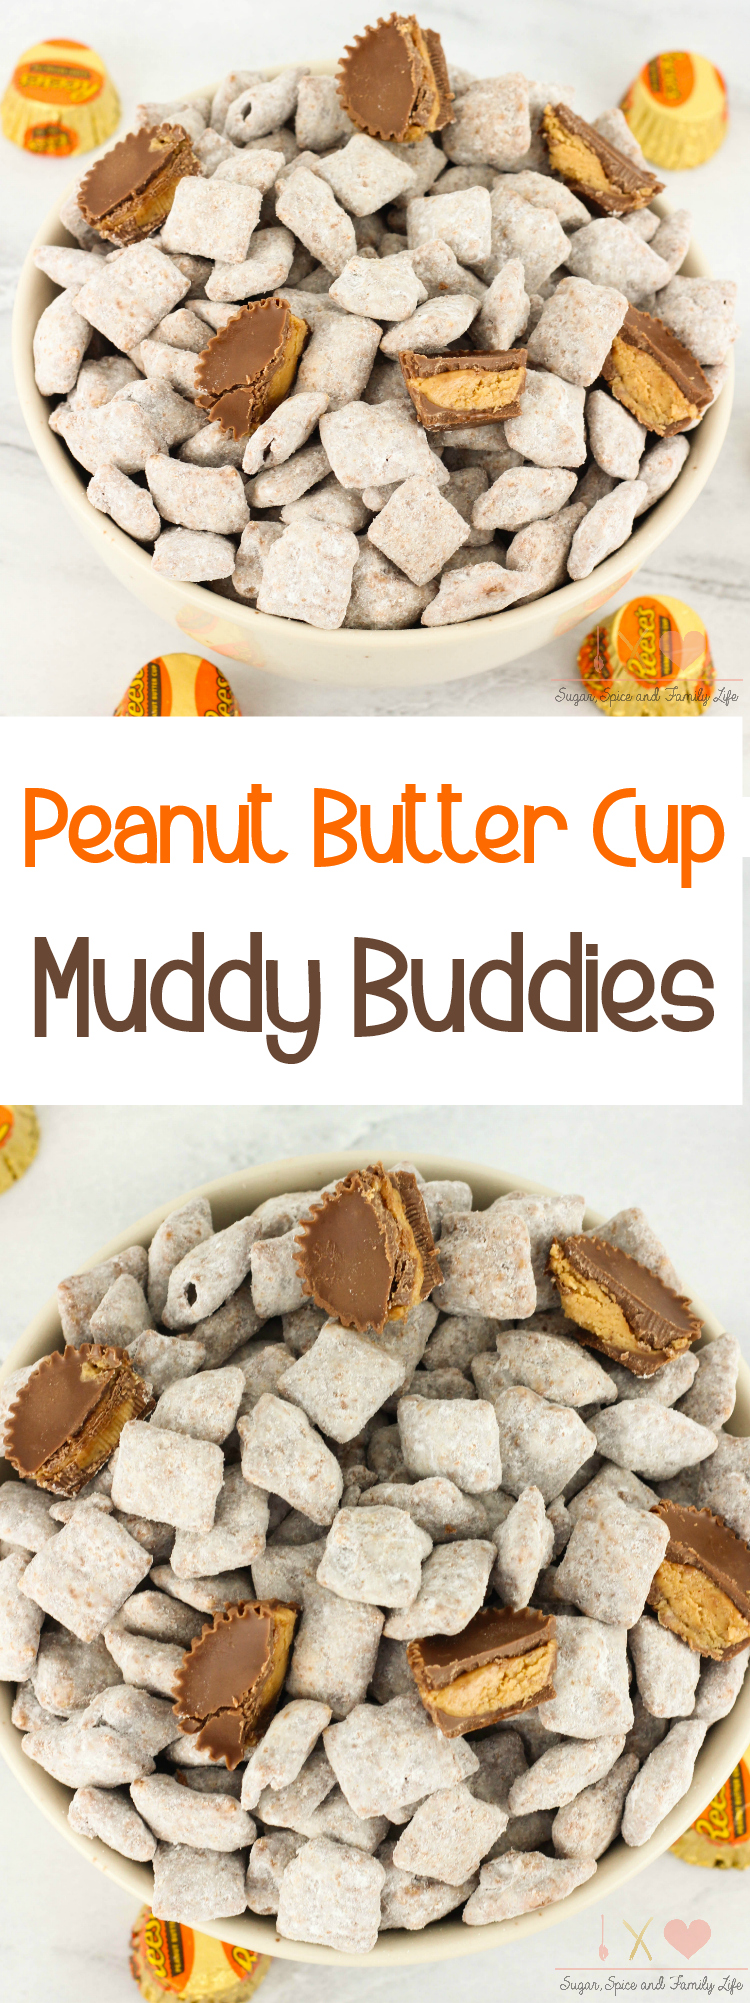 Peanut Butter Cup Muddy Buddies Recipe